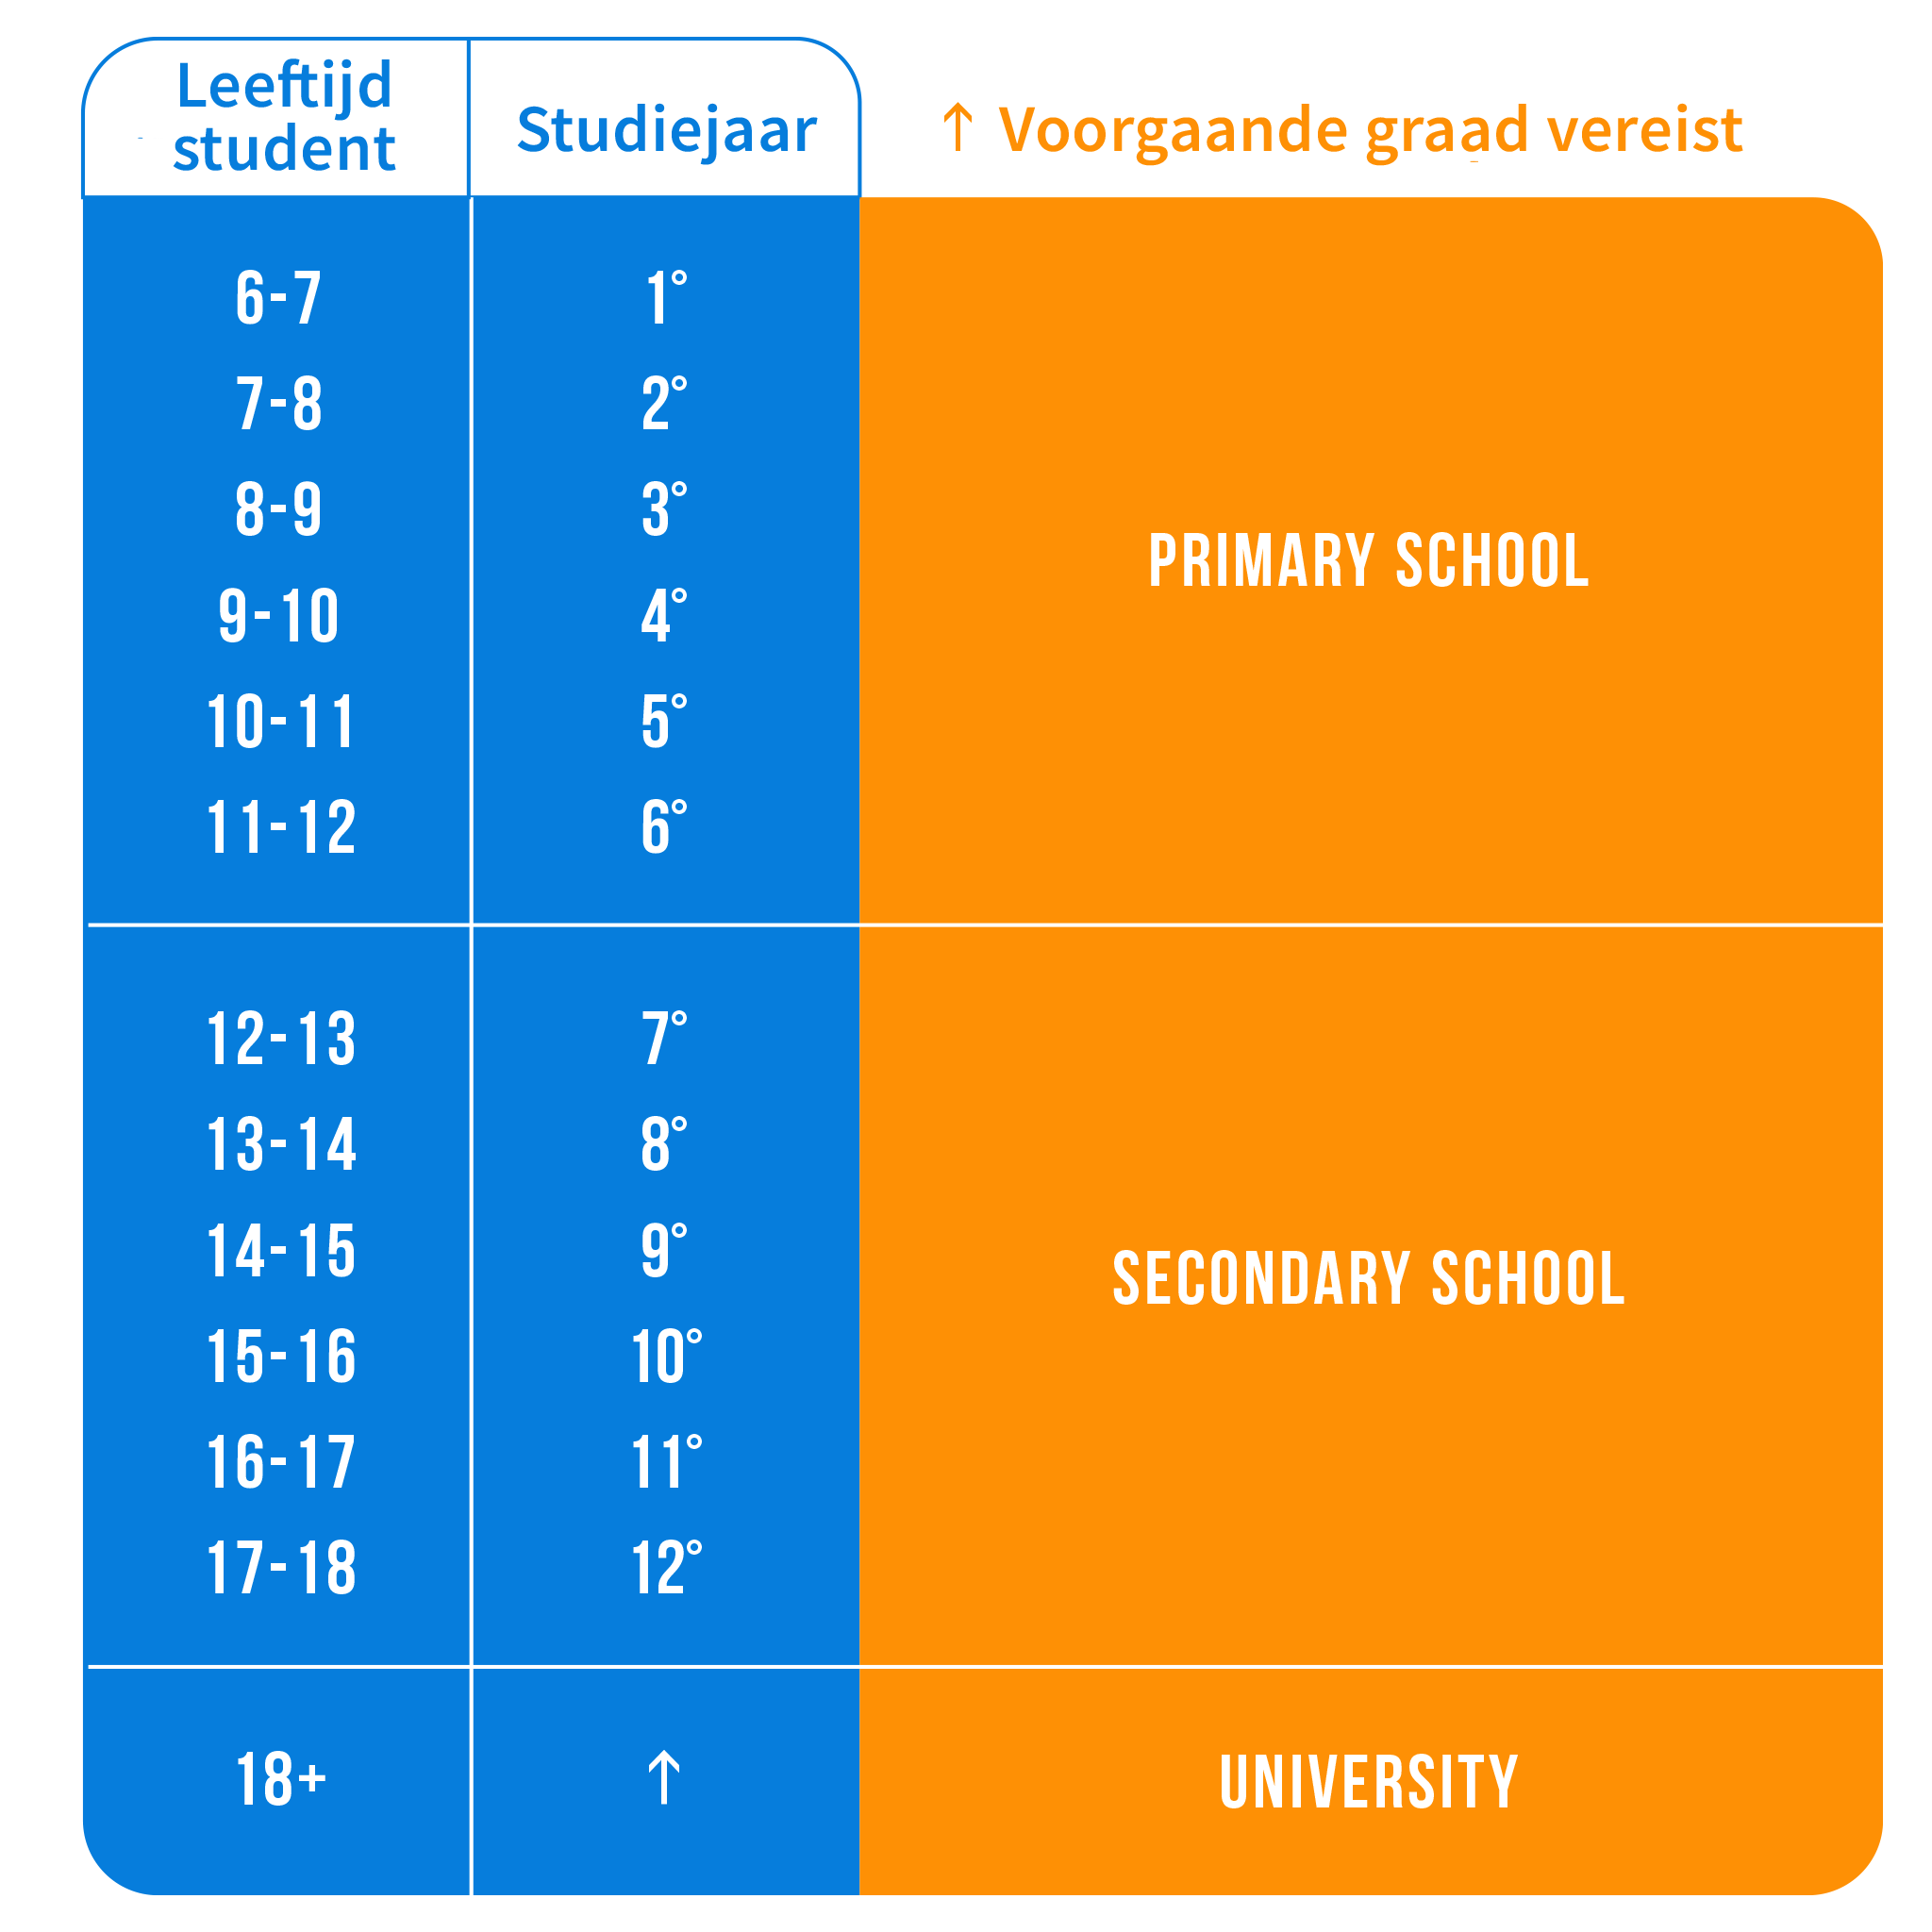 Tabel van schooljaren in het Australische schoolsysteem